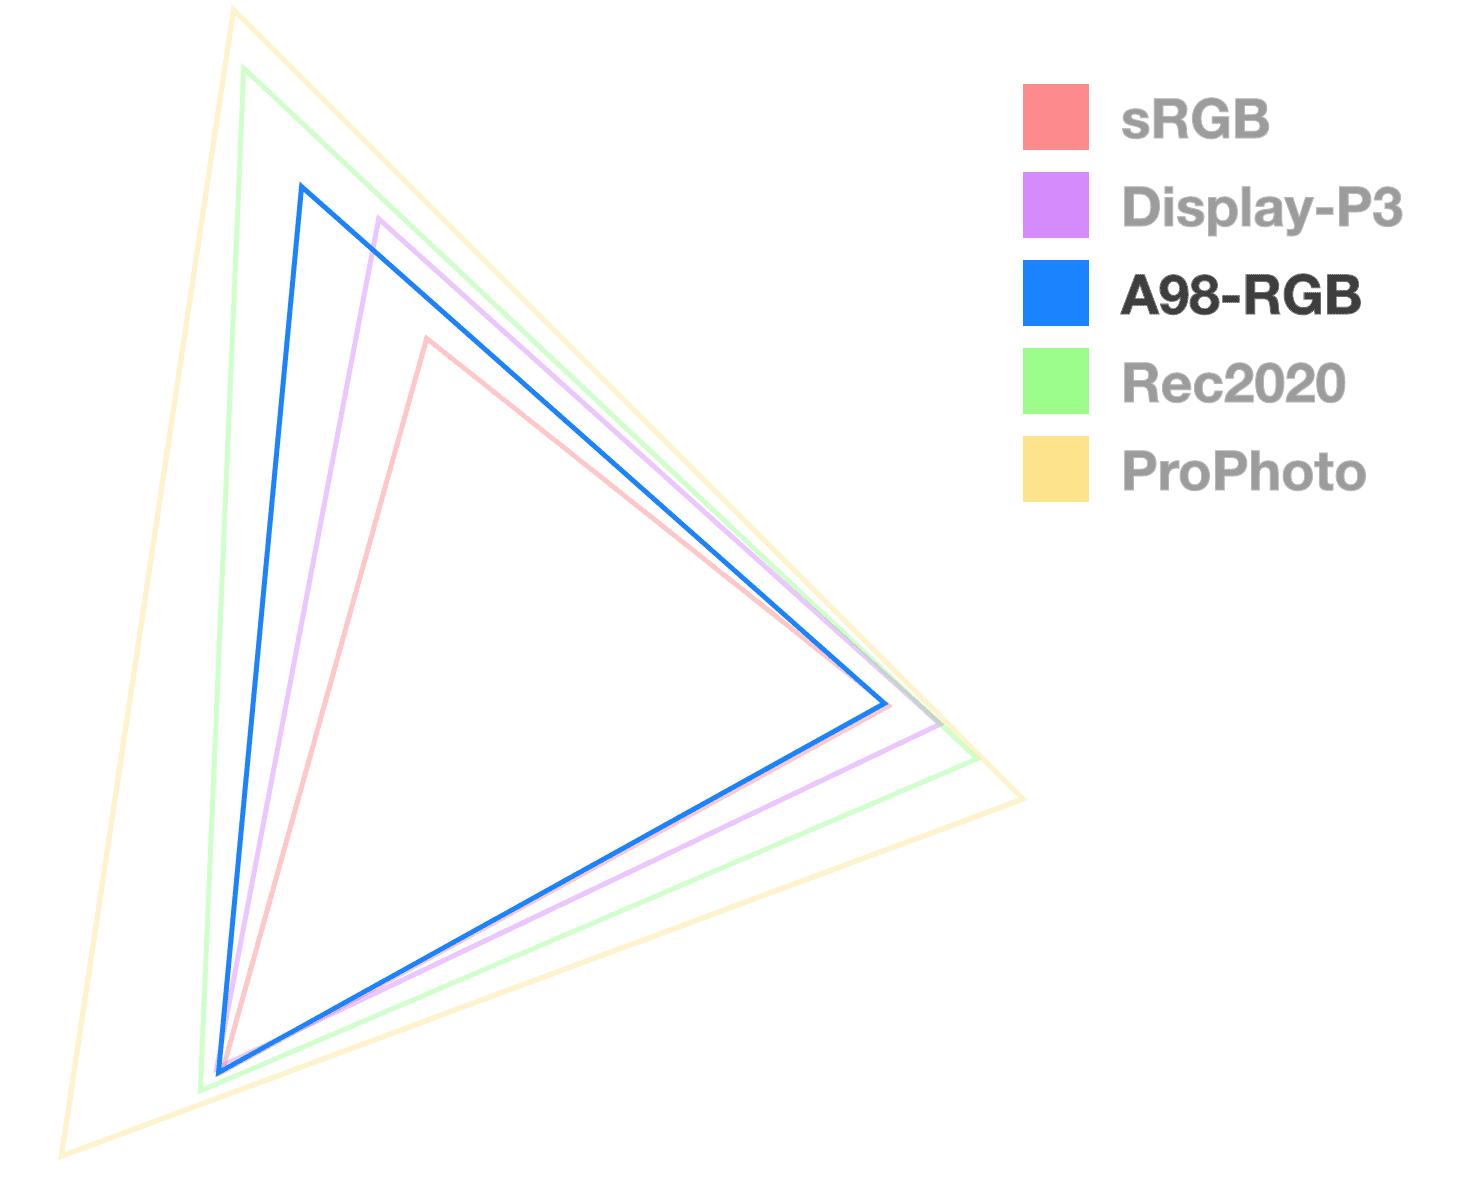 Треугольник A98 — единственный полностью непрозрачный, что помогает визуализировать размер гаммы. Выглядит как треугольник средних размеров.